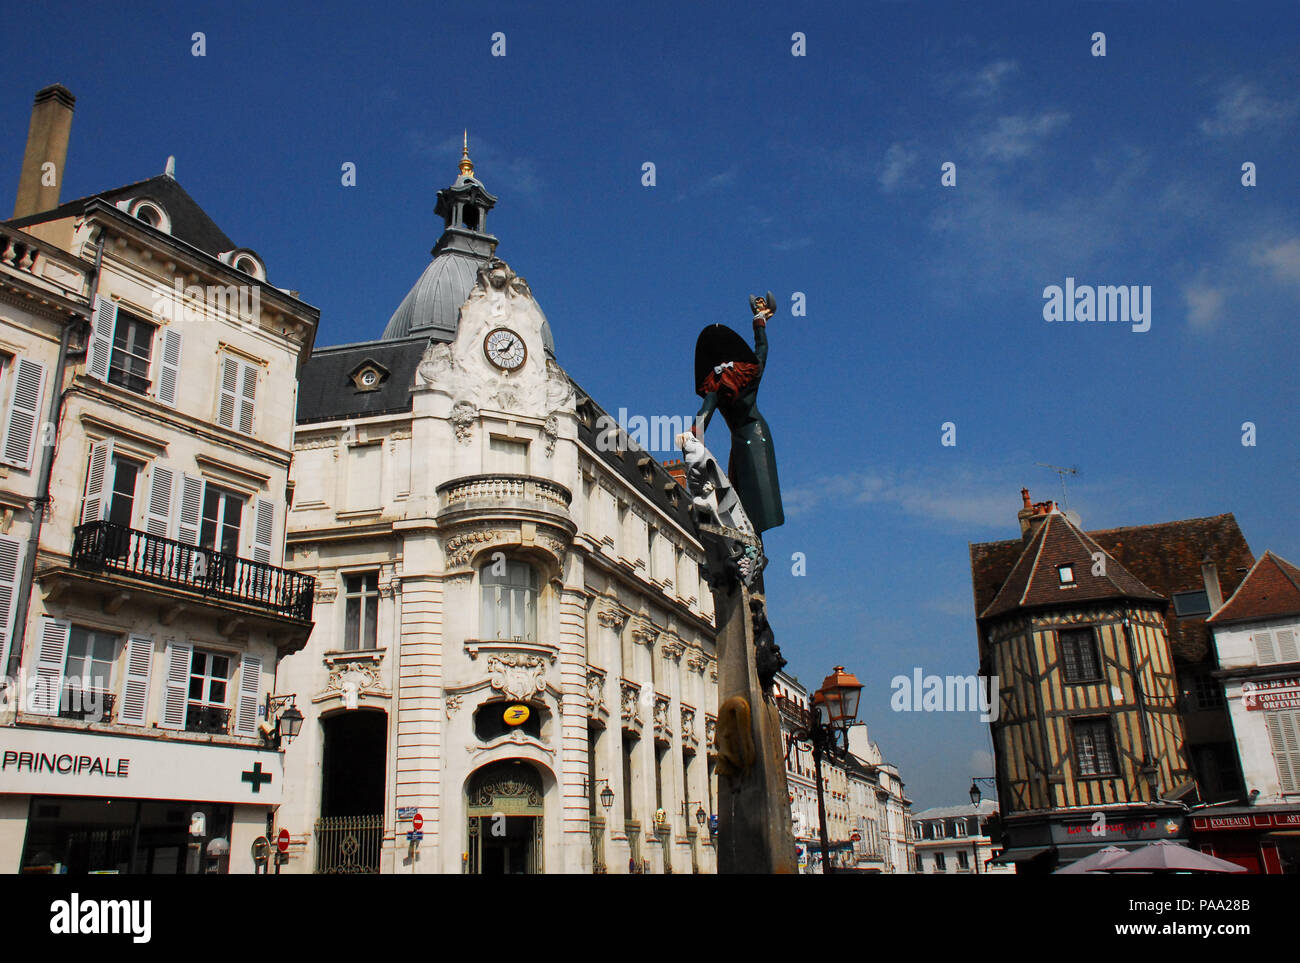 Le centre de la superbe ville historique d'Auxerre, France sur une journée ensoleillée. Banque D'Images